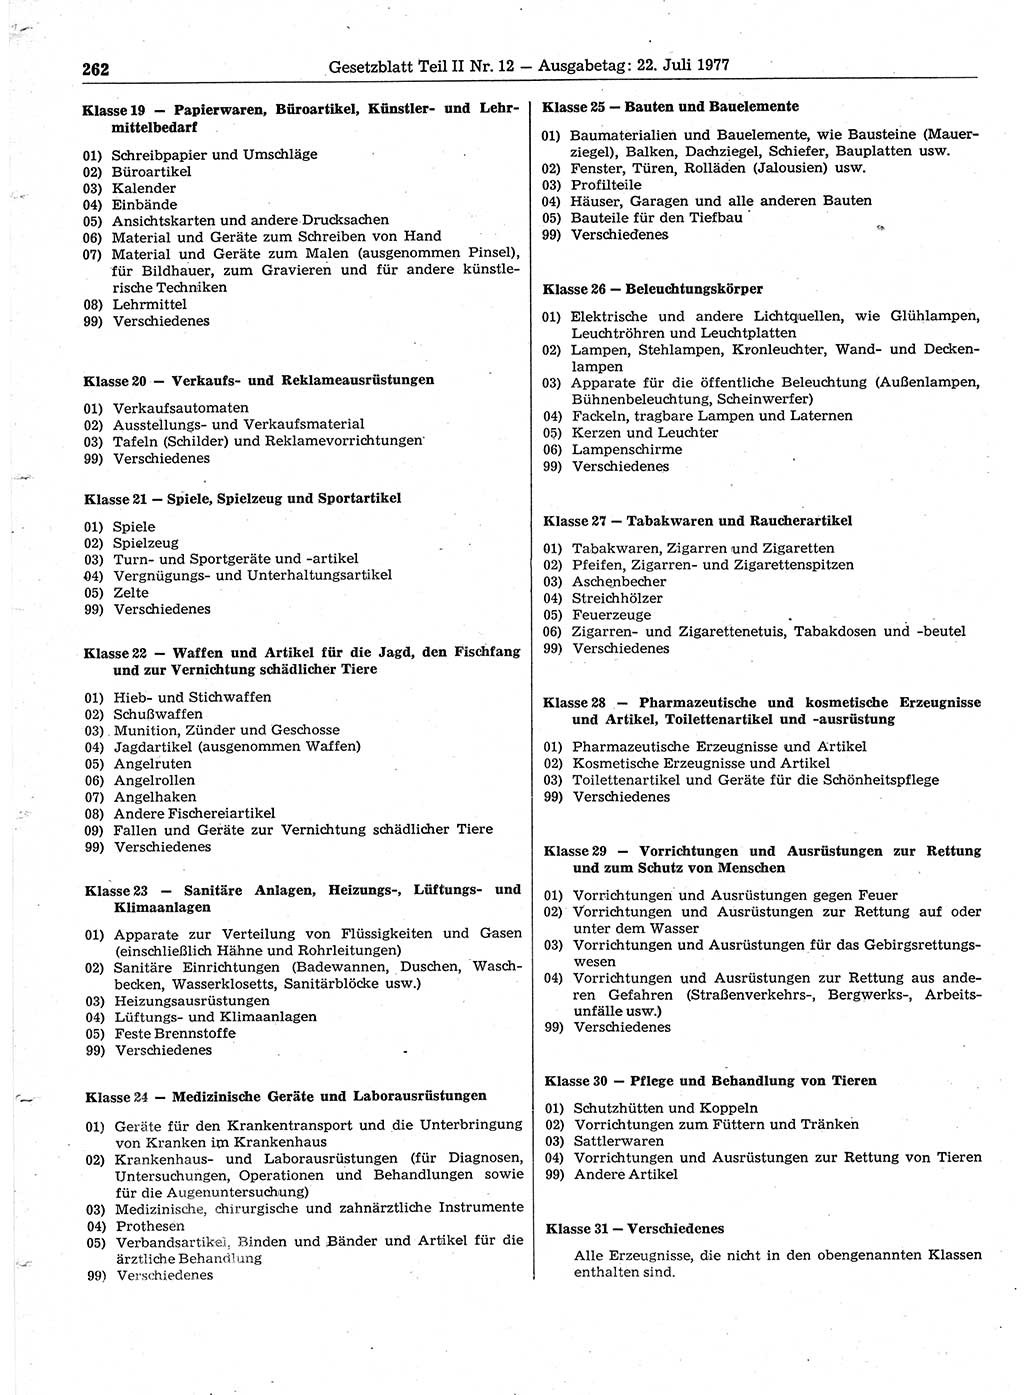 Gesetzblatt (GBl.) der Deutschen Demokratischen Republik (DDR) Teil ⅠⅠ 1977, Seite 262 (GBl. DDR ⅠⅠ 1977, S. 262)